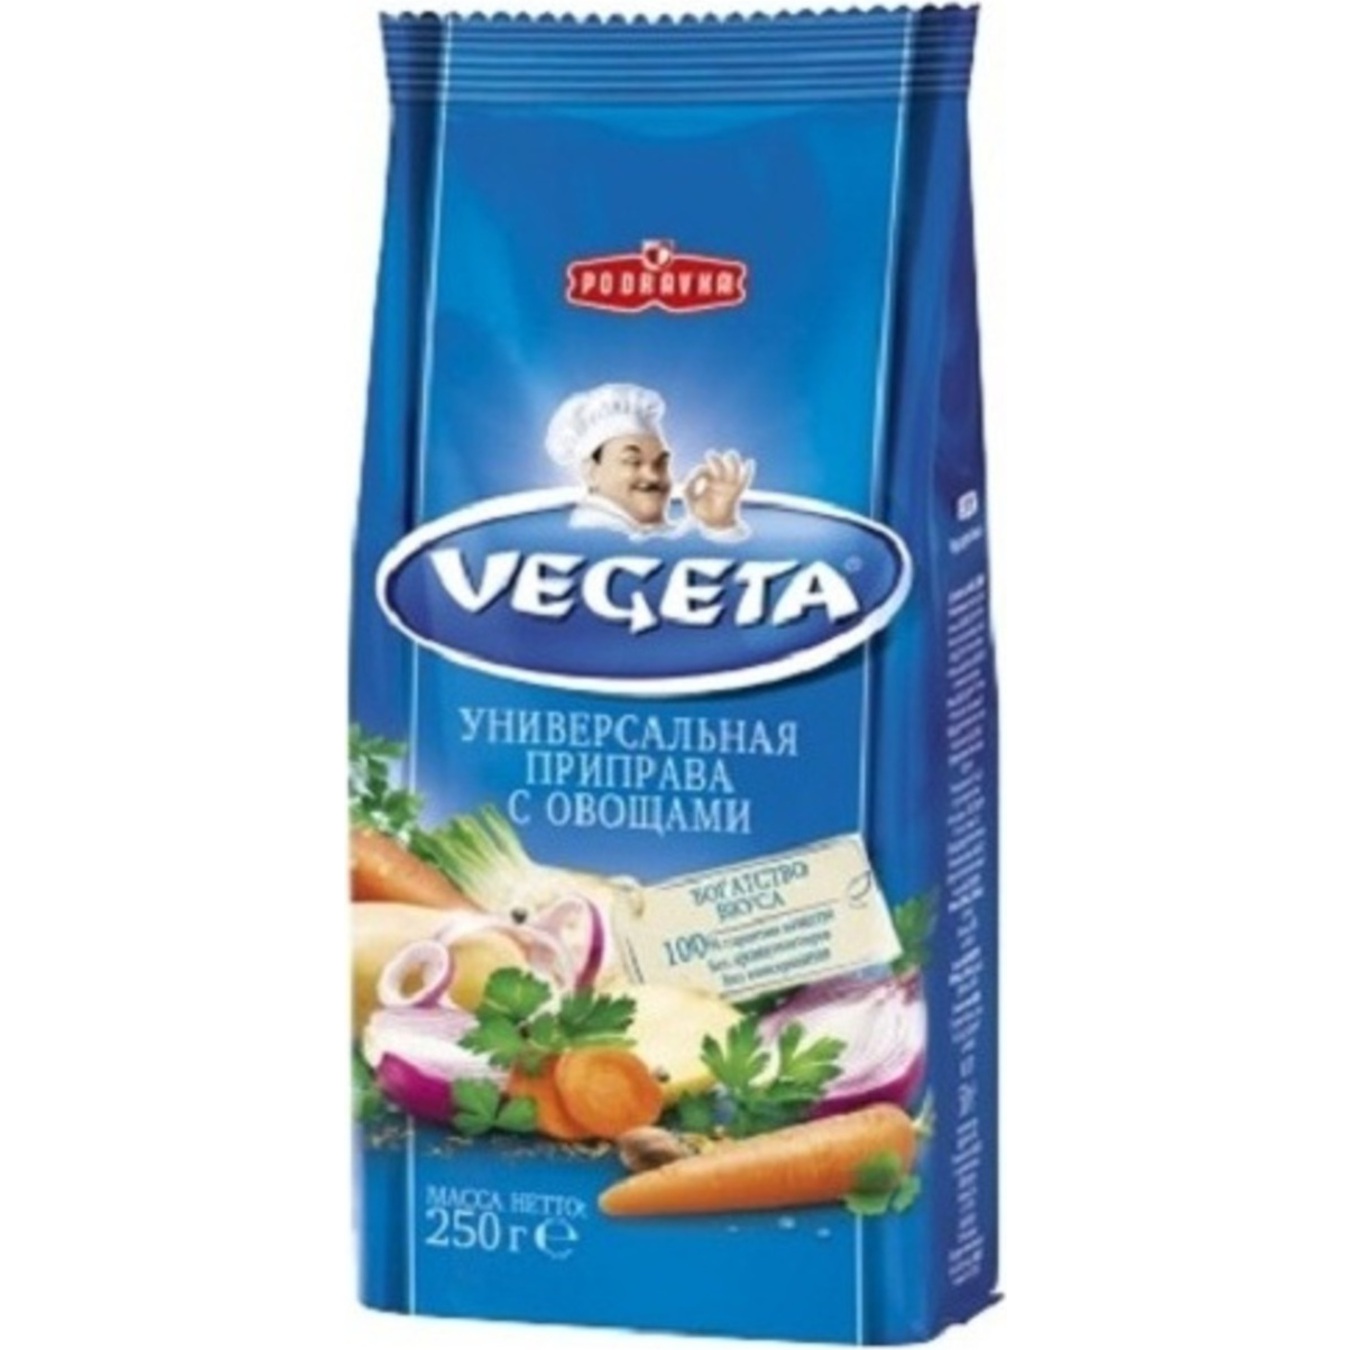 Vegeta Seasoning Universal with vegetables 250g